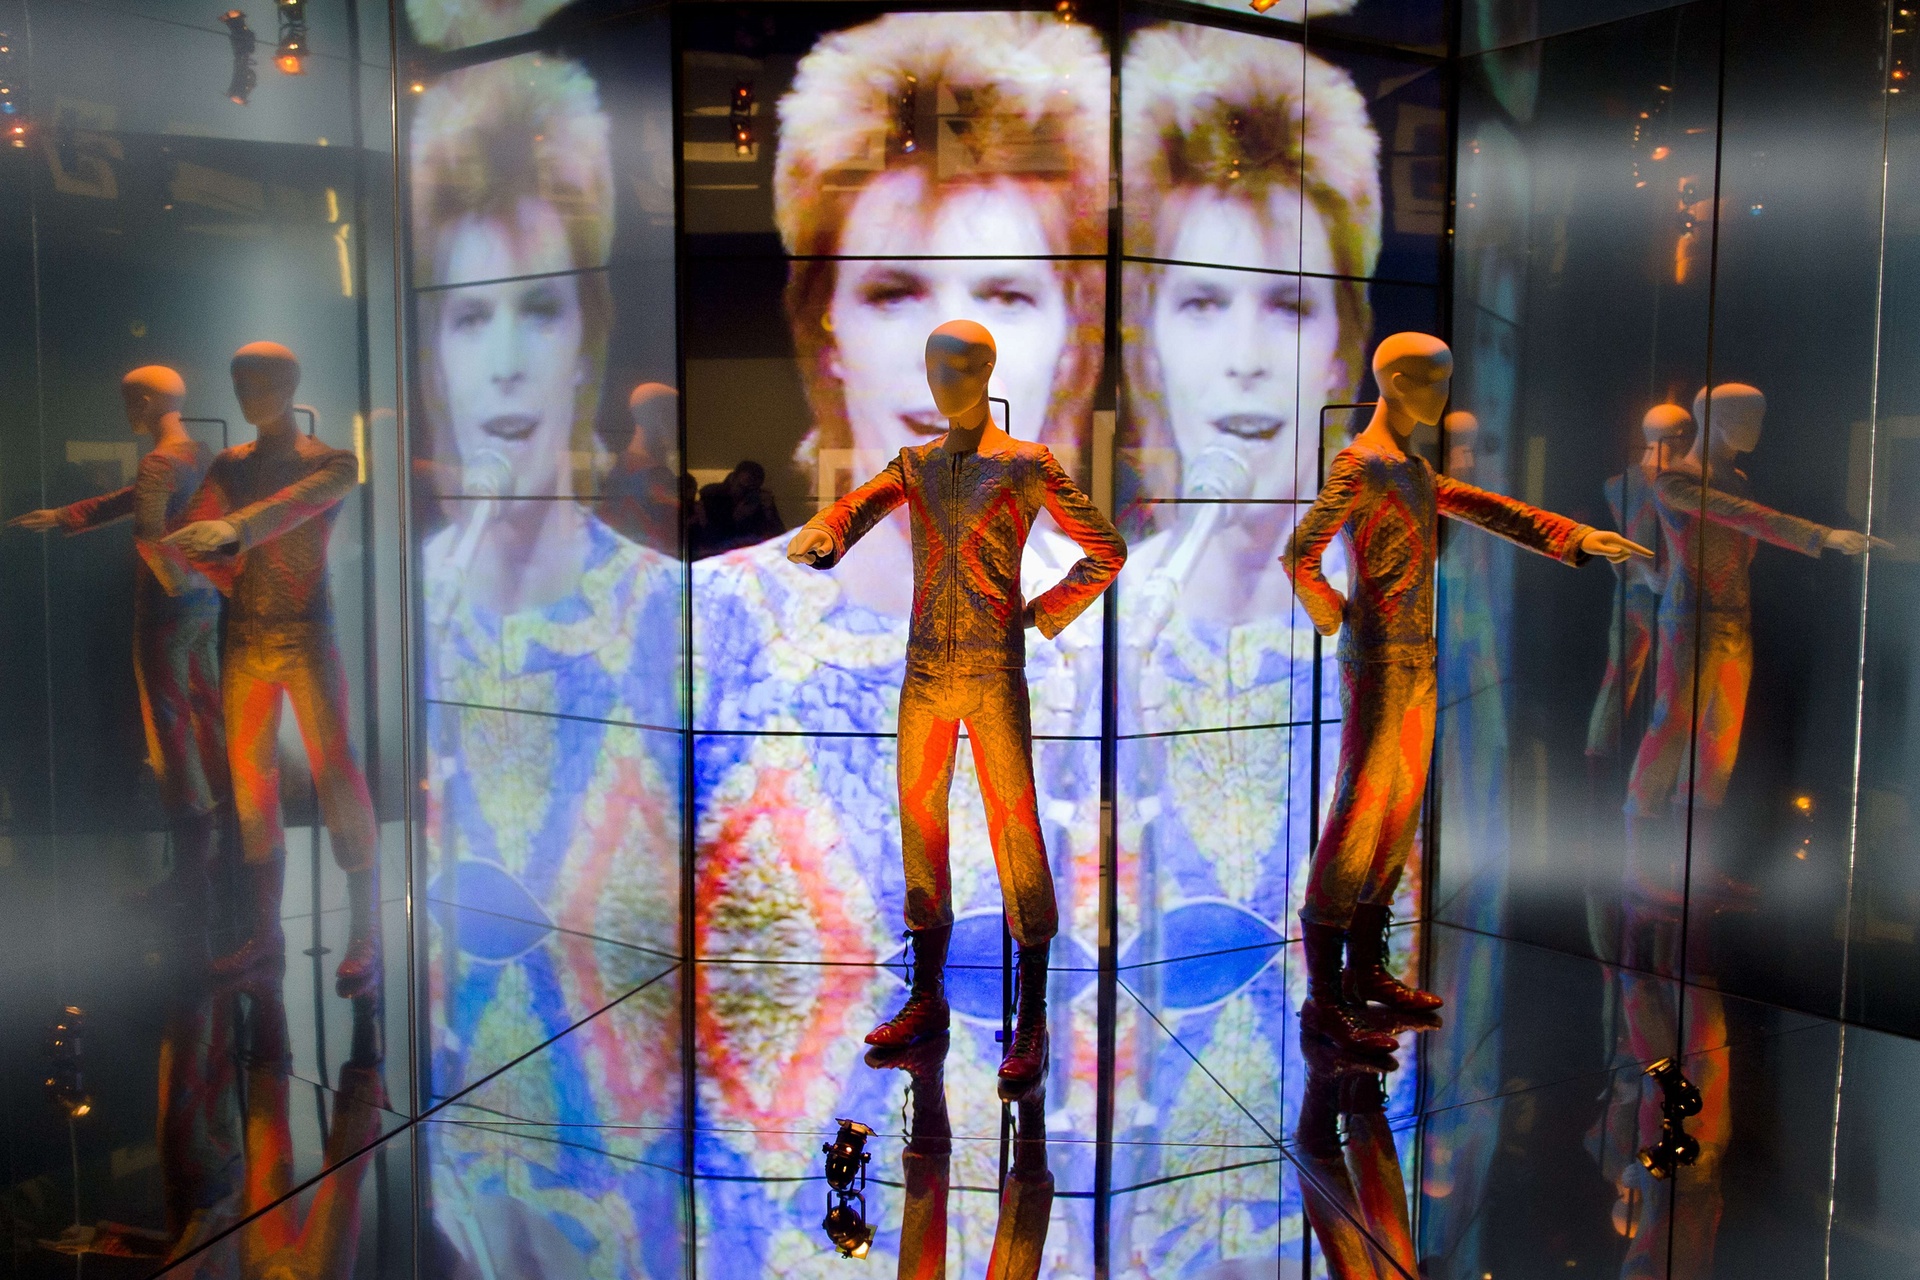 През 2013 г. музеят Виктория и Албърт провежда изложба с над 300 предмети на Дейвид Бауи, включително ръкописни текстове, оригинални костюми, мода, фотография, кино, музикални клипове, определени проекти и собствени инструменти на Бауи. Тук е костюма "Starman". Снимка: Leon Neal / AFP / Getty Images